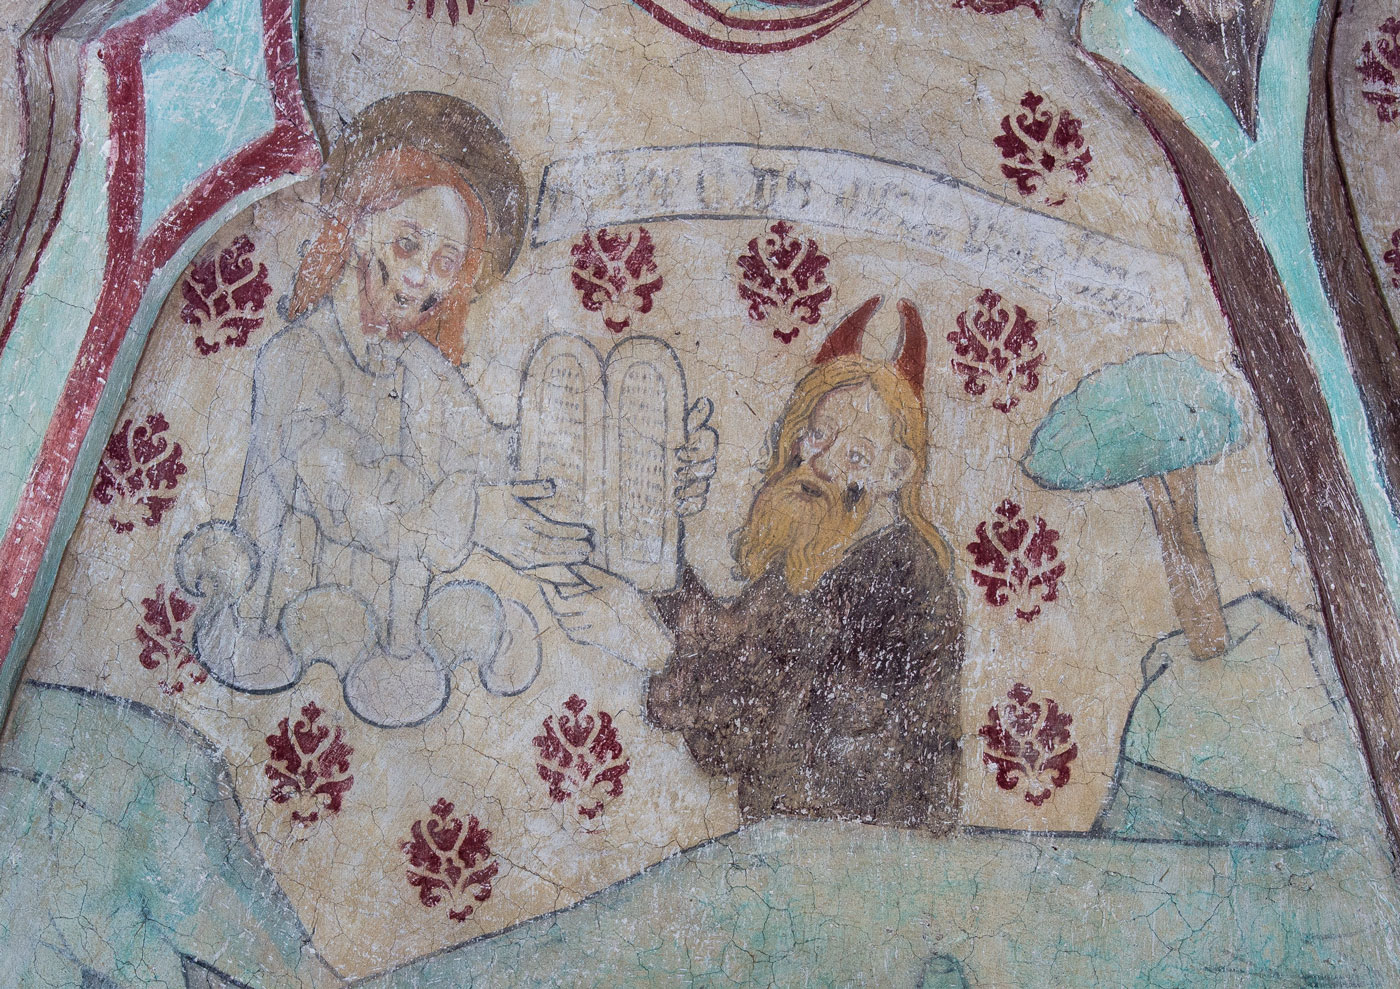 Detalj ur Mose mottager Lagens tavlor på Sinai berg - Österunda kyrka